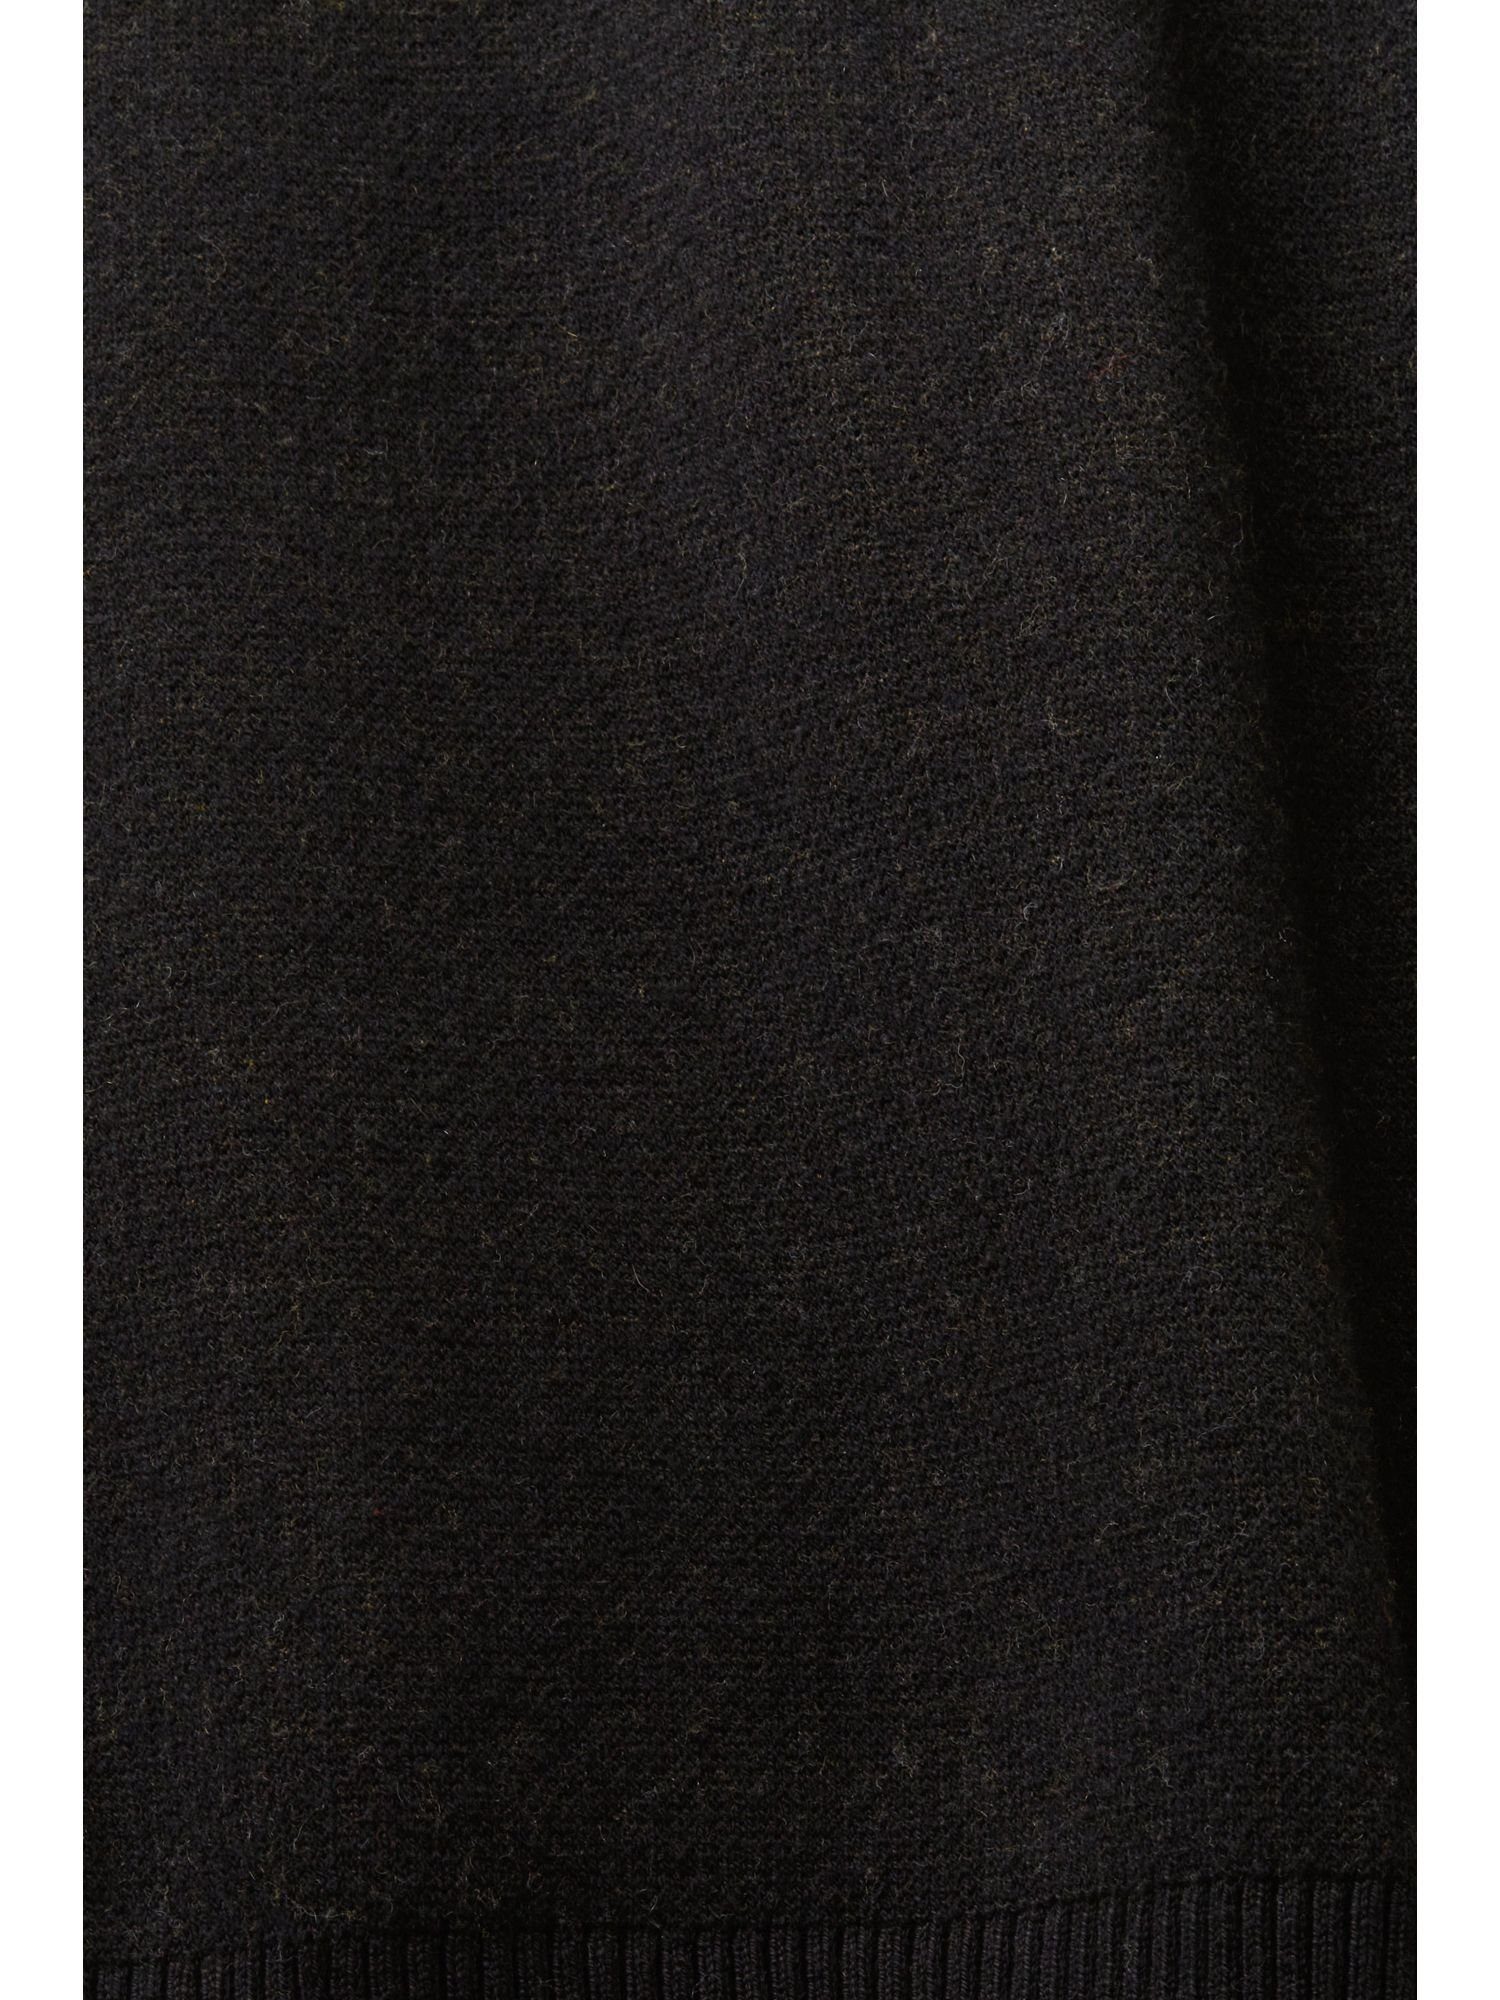 floralem Minirock Strick-Minirock Jacquard-Muster BLACK mit Esprit